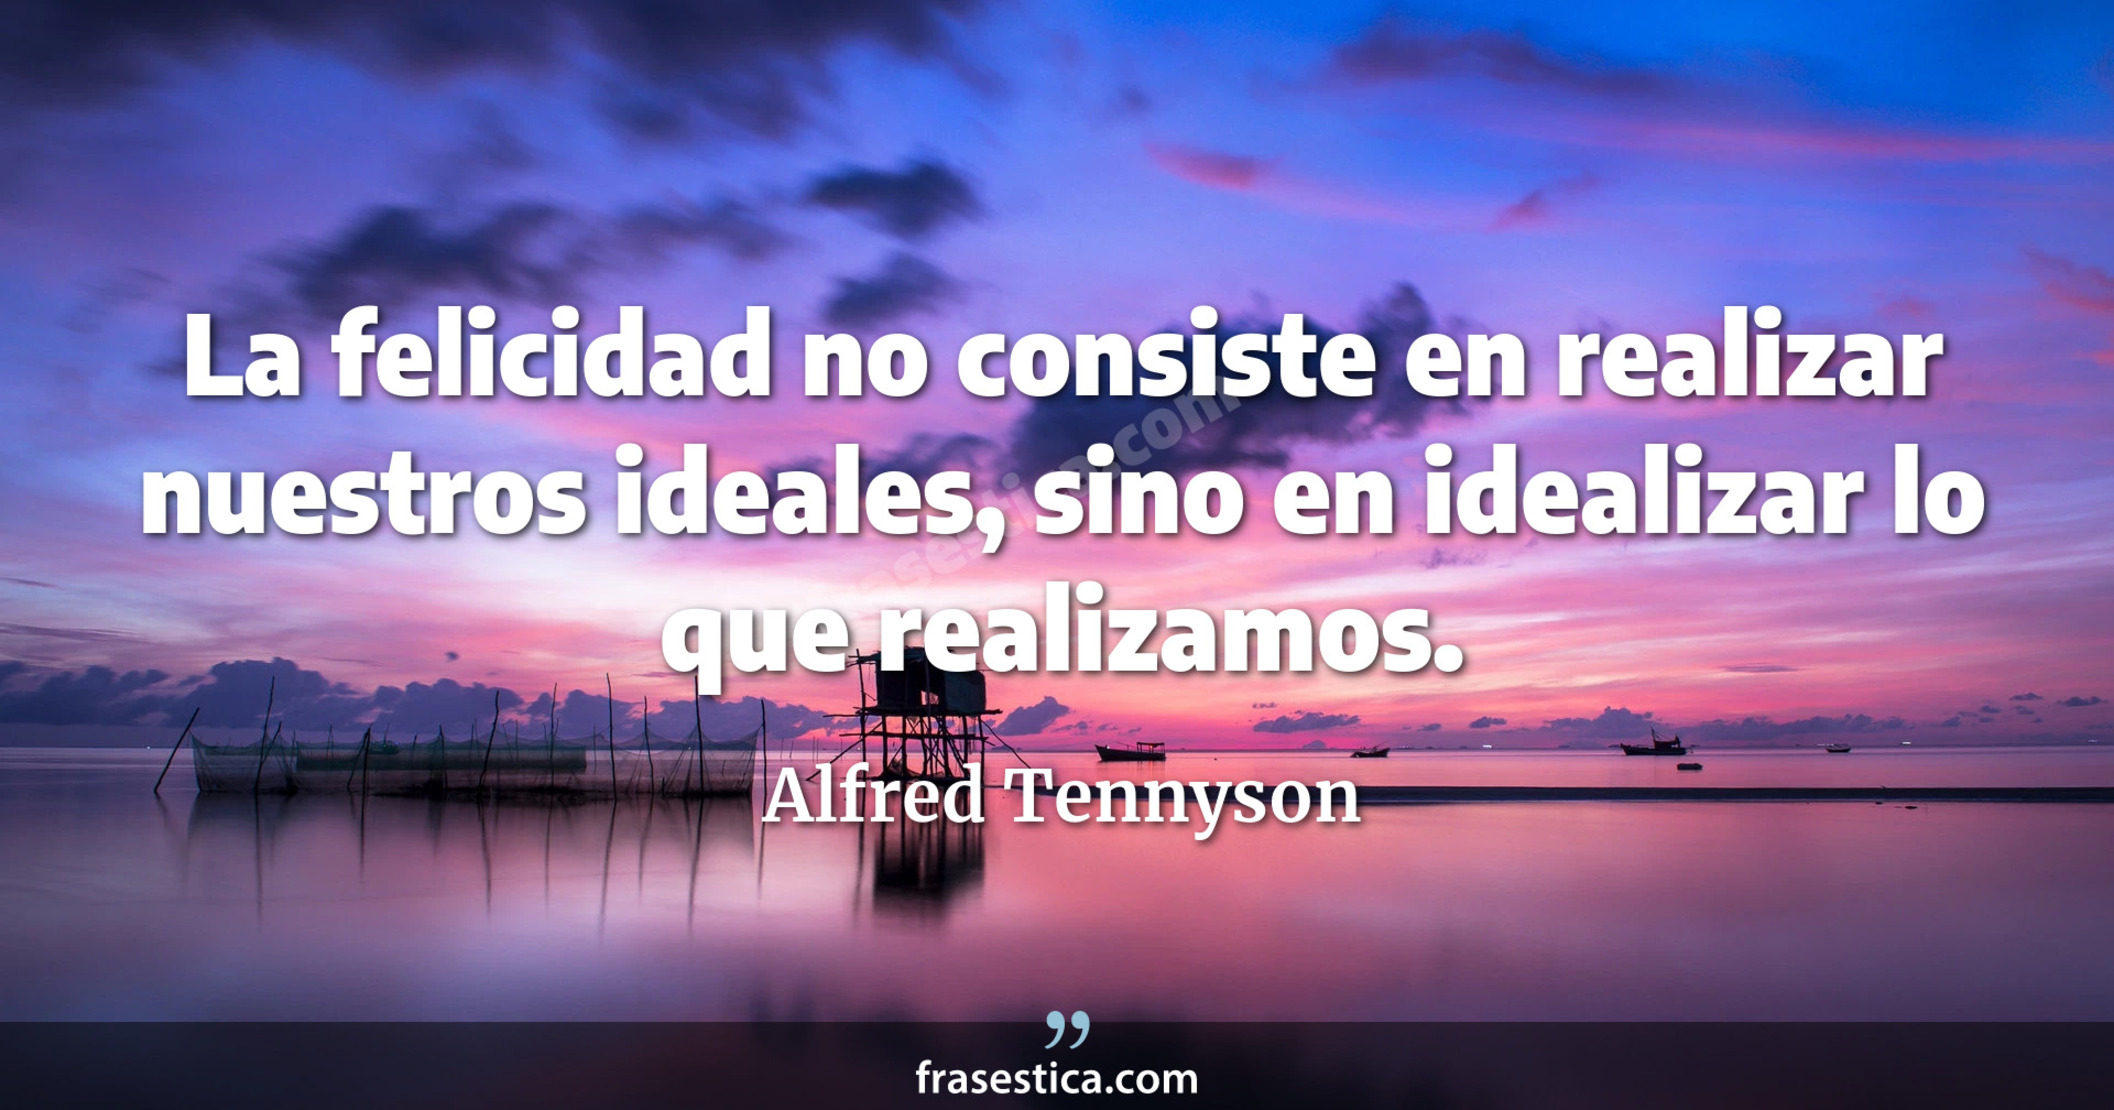 La felicidad no consiste en realizar nuestros ideales, sino en idealizar lo que realizamos. - Alfred Tennyson